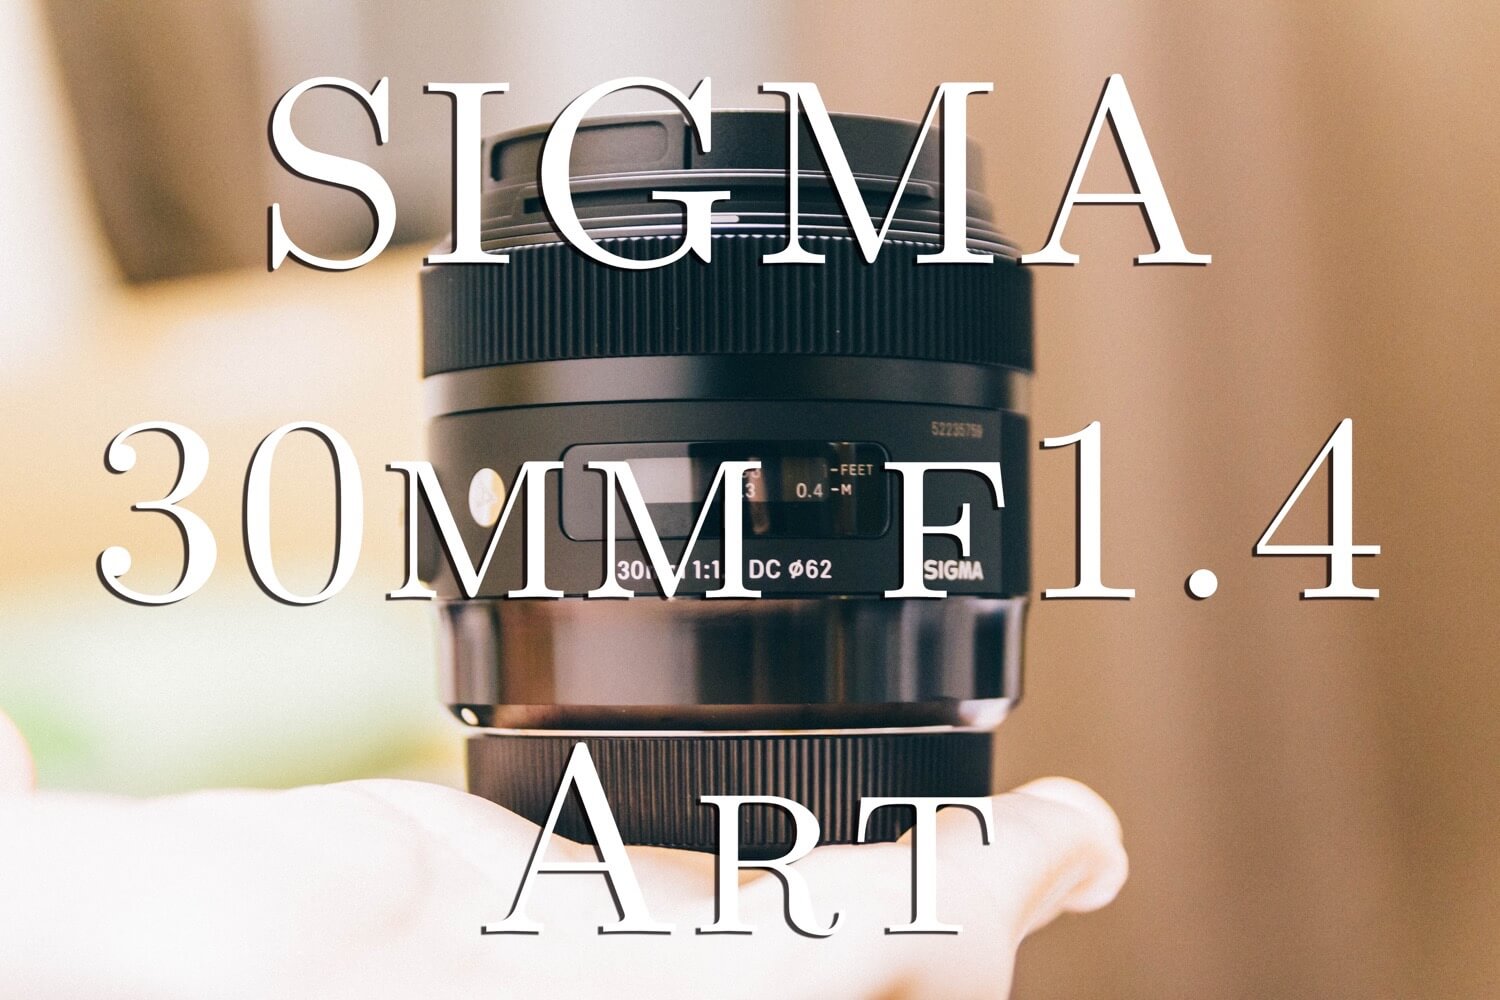 明るいSIGMAの単焦点レンズ「SIGMA 30mm F1.4 DC HSM」を購入！触った感想など。